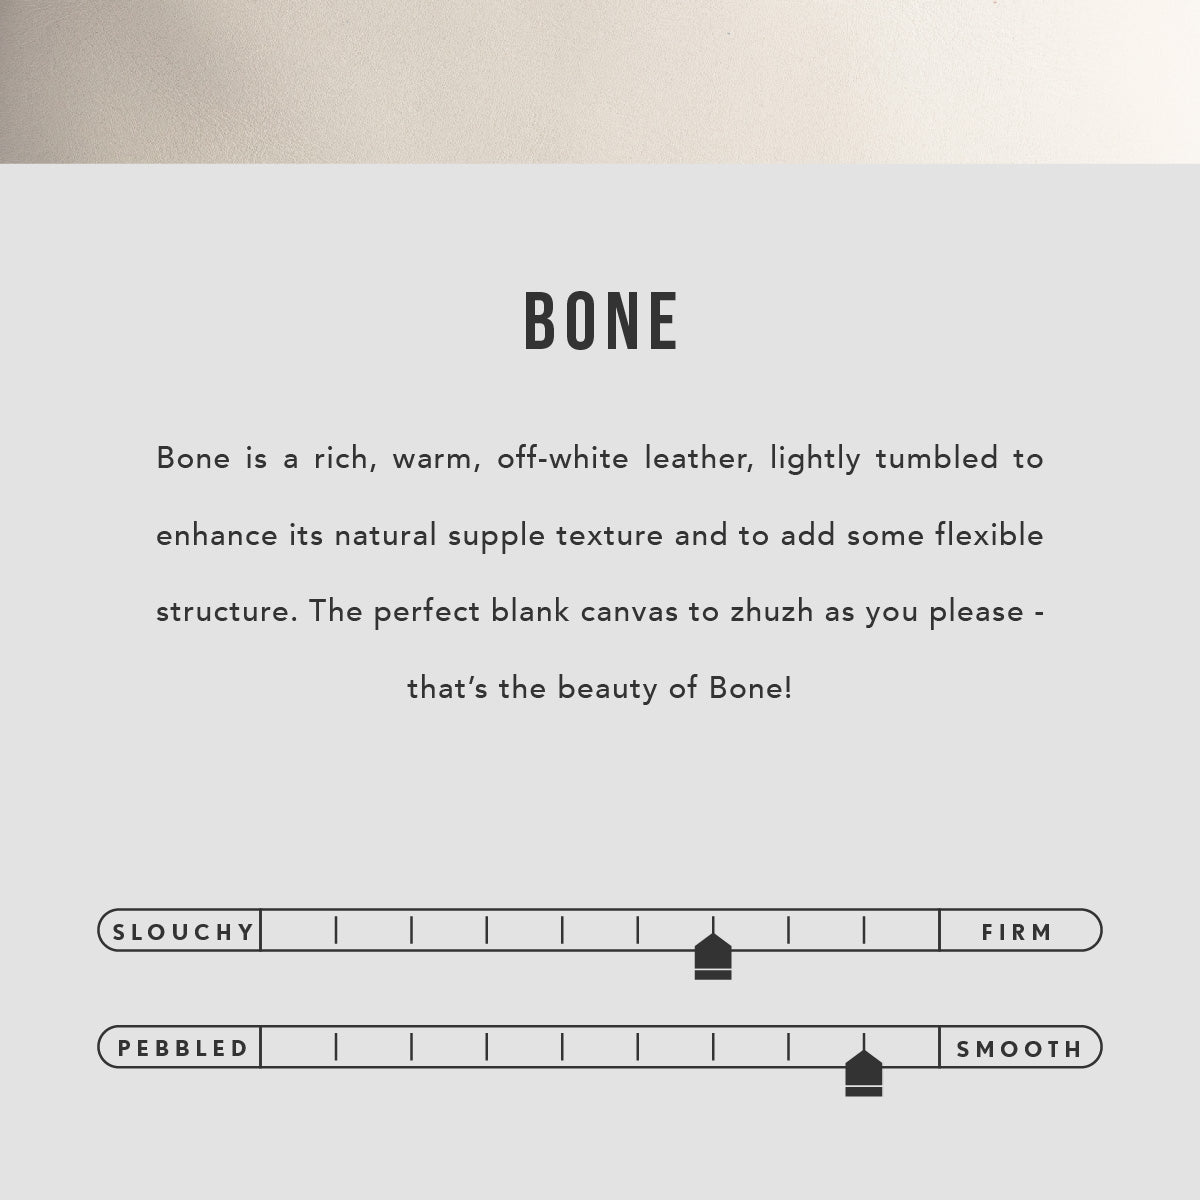 Bone | infographic